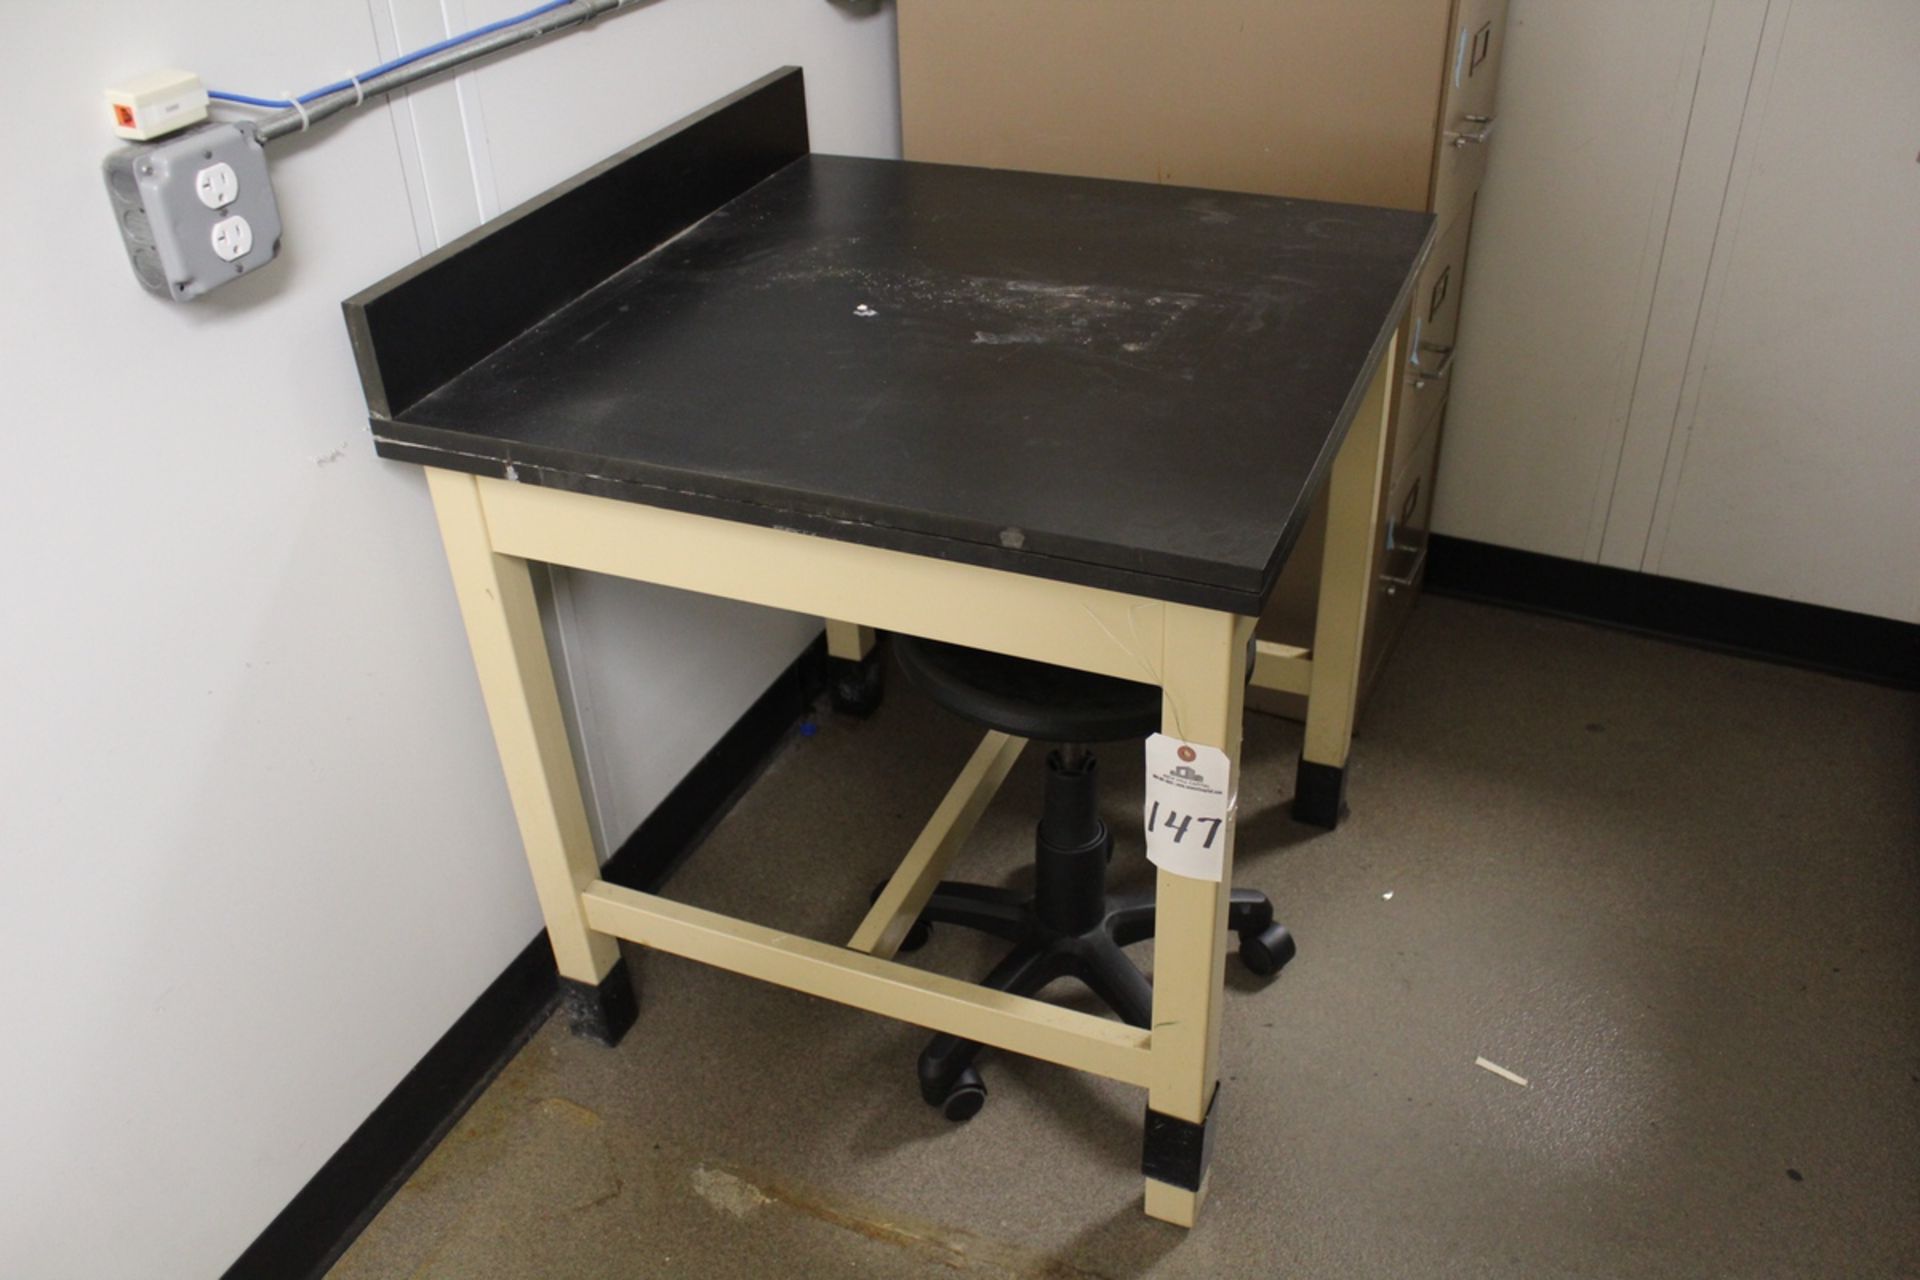 Metal Laboratory Table, 30" x 30" | Rig Fee: $30 or HC